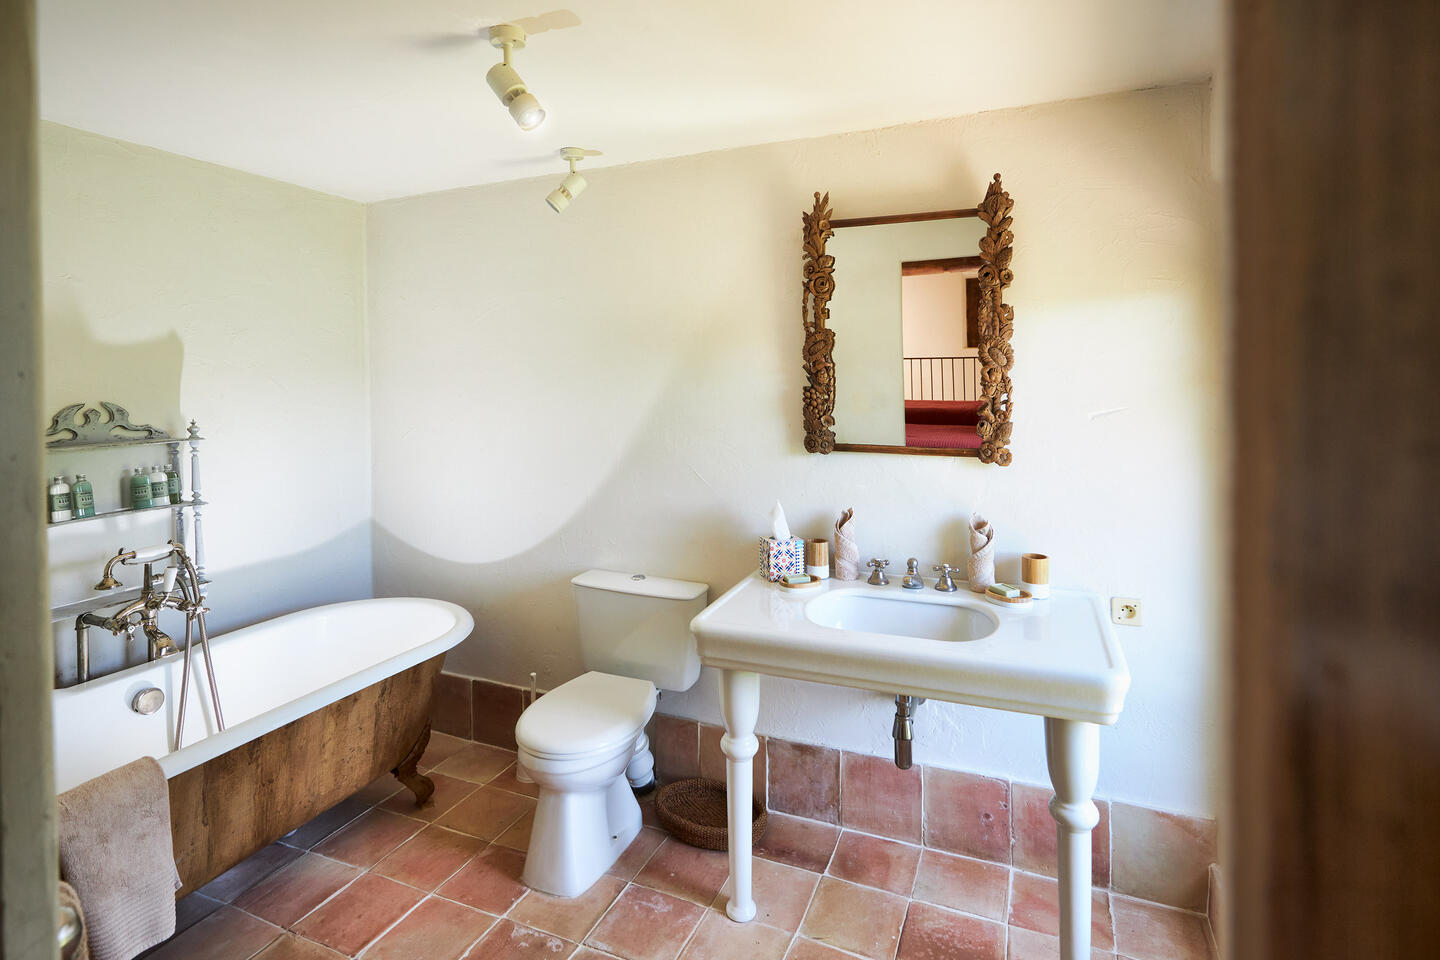 91 - Château de Luberon: Villa: Bathroom